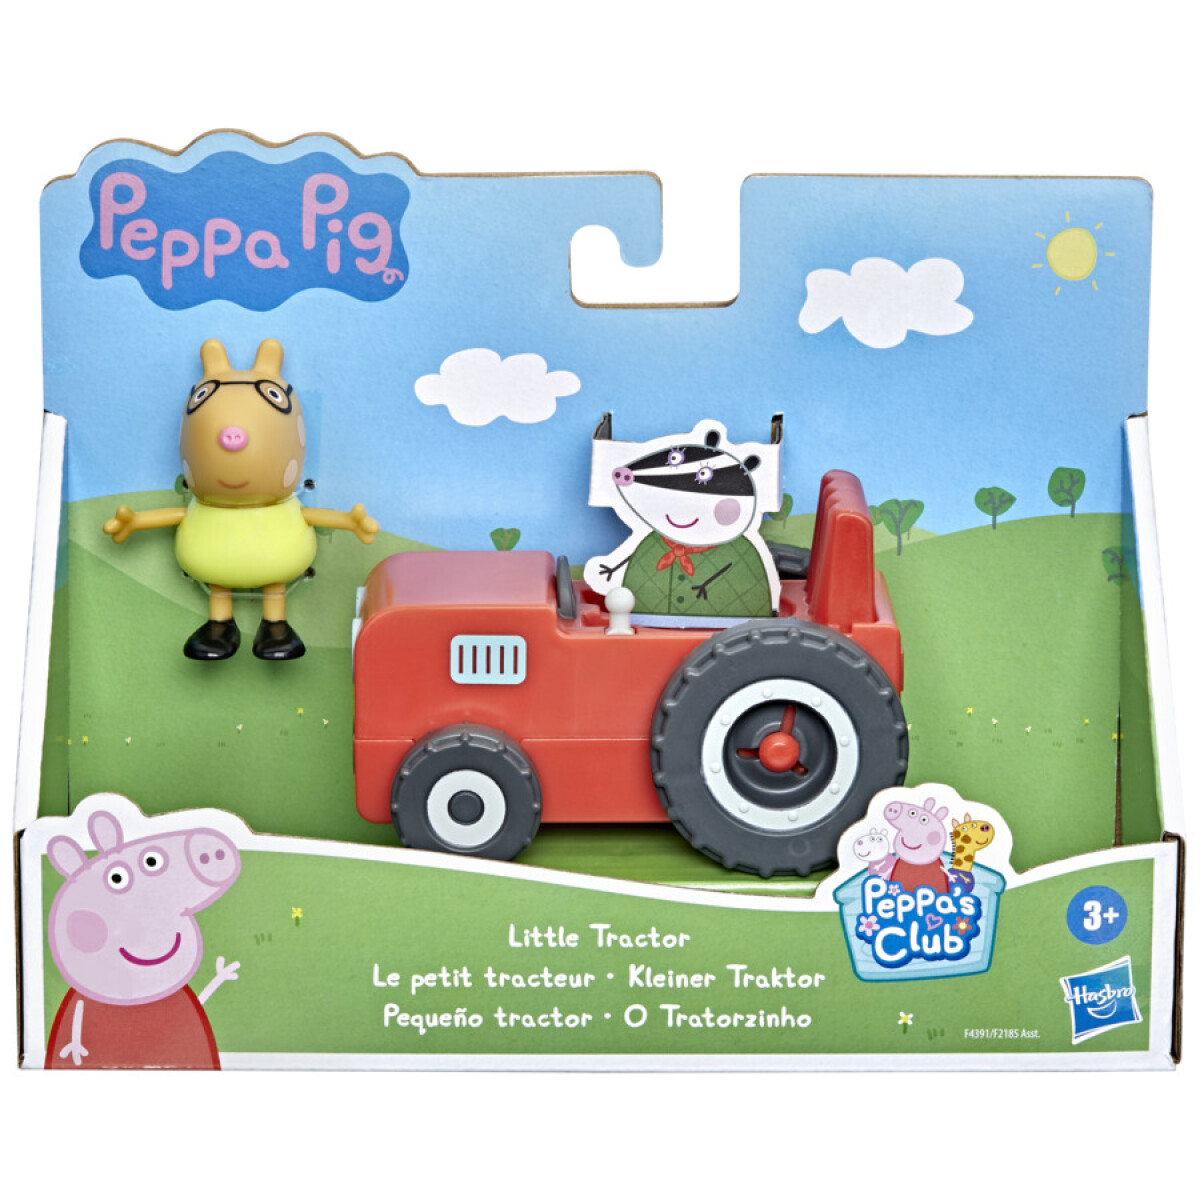 Set Peppa Pig Tractor con Ruedas Que Giran Incluye Figura - 001 